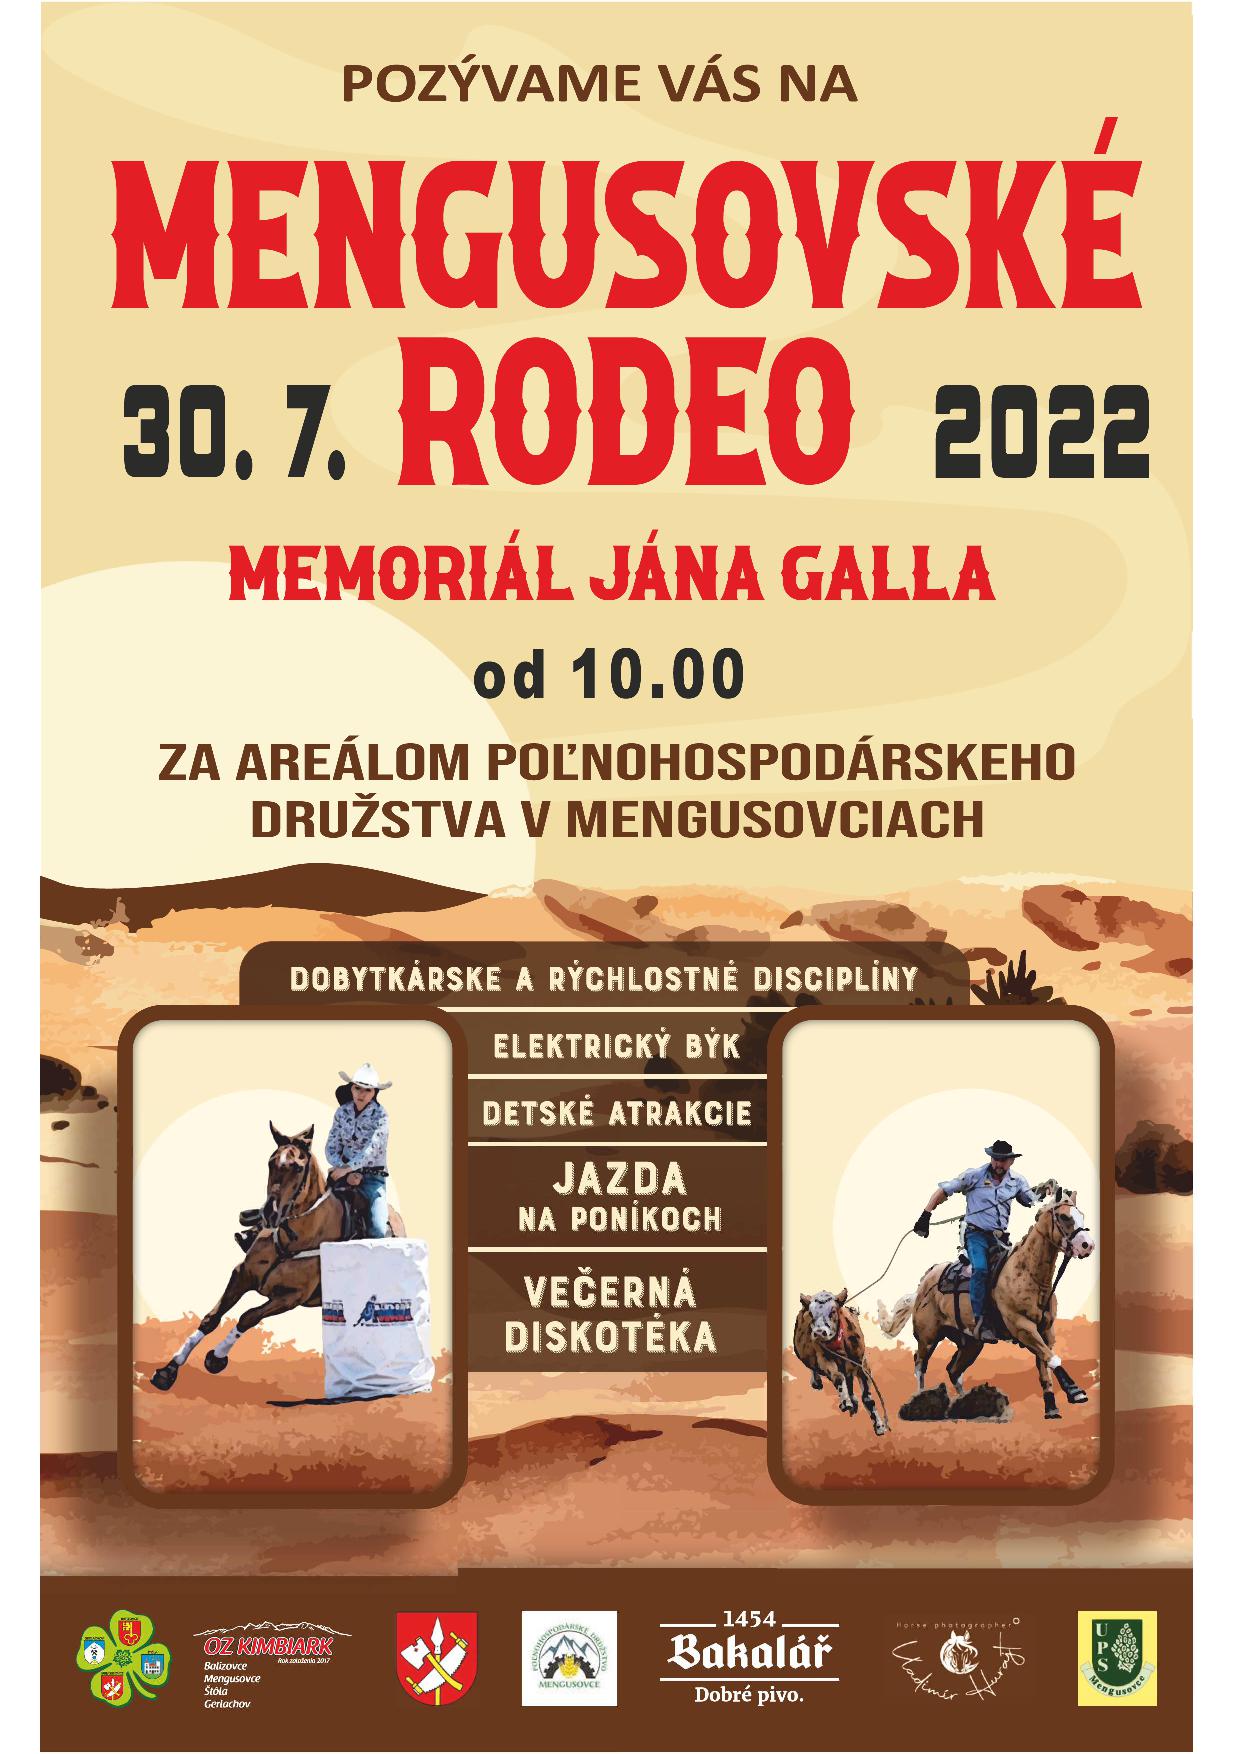 Mengusovské rodeo Memoriál Jána Galla 2022 Mengusovce